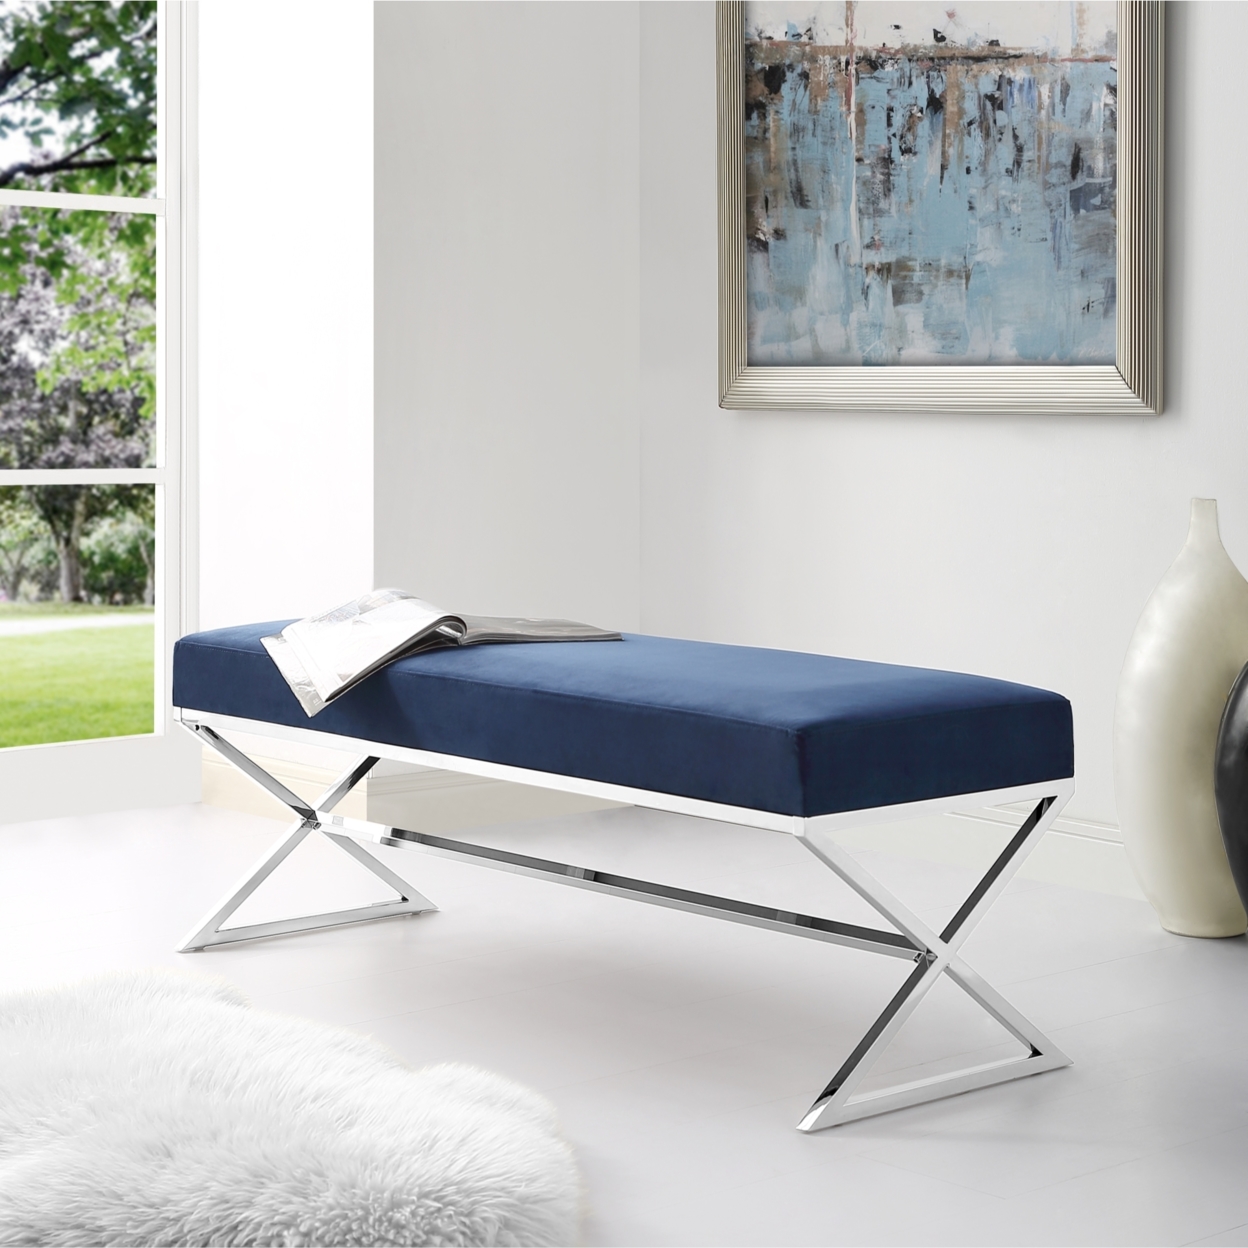 Liam Velvet Upholstered Bench-Stainless Steel Legs-Living-room, Entryway, Bedroom-Inspired Home - Grey